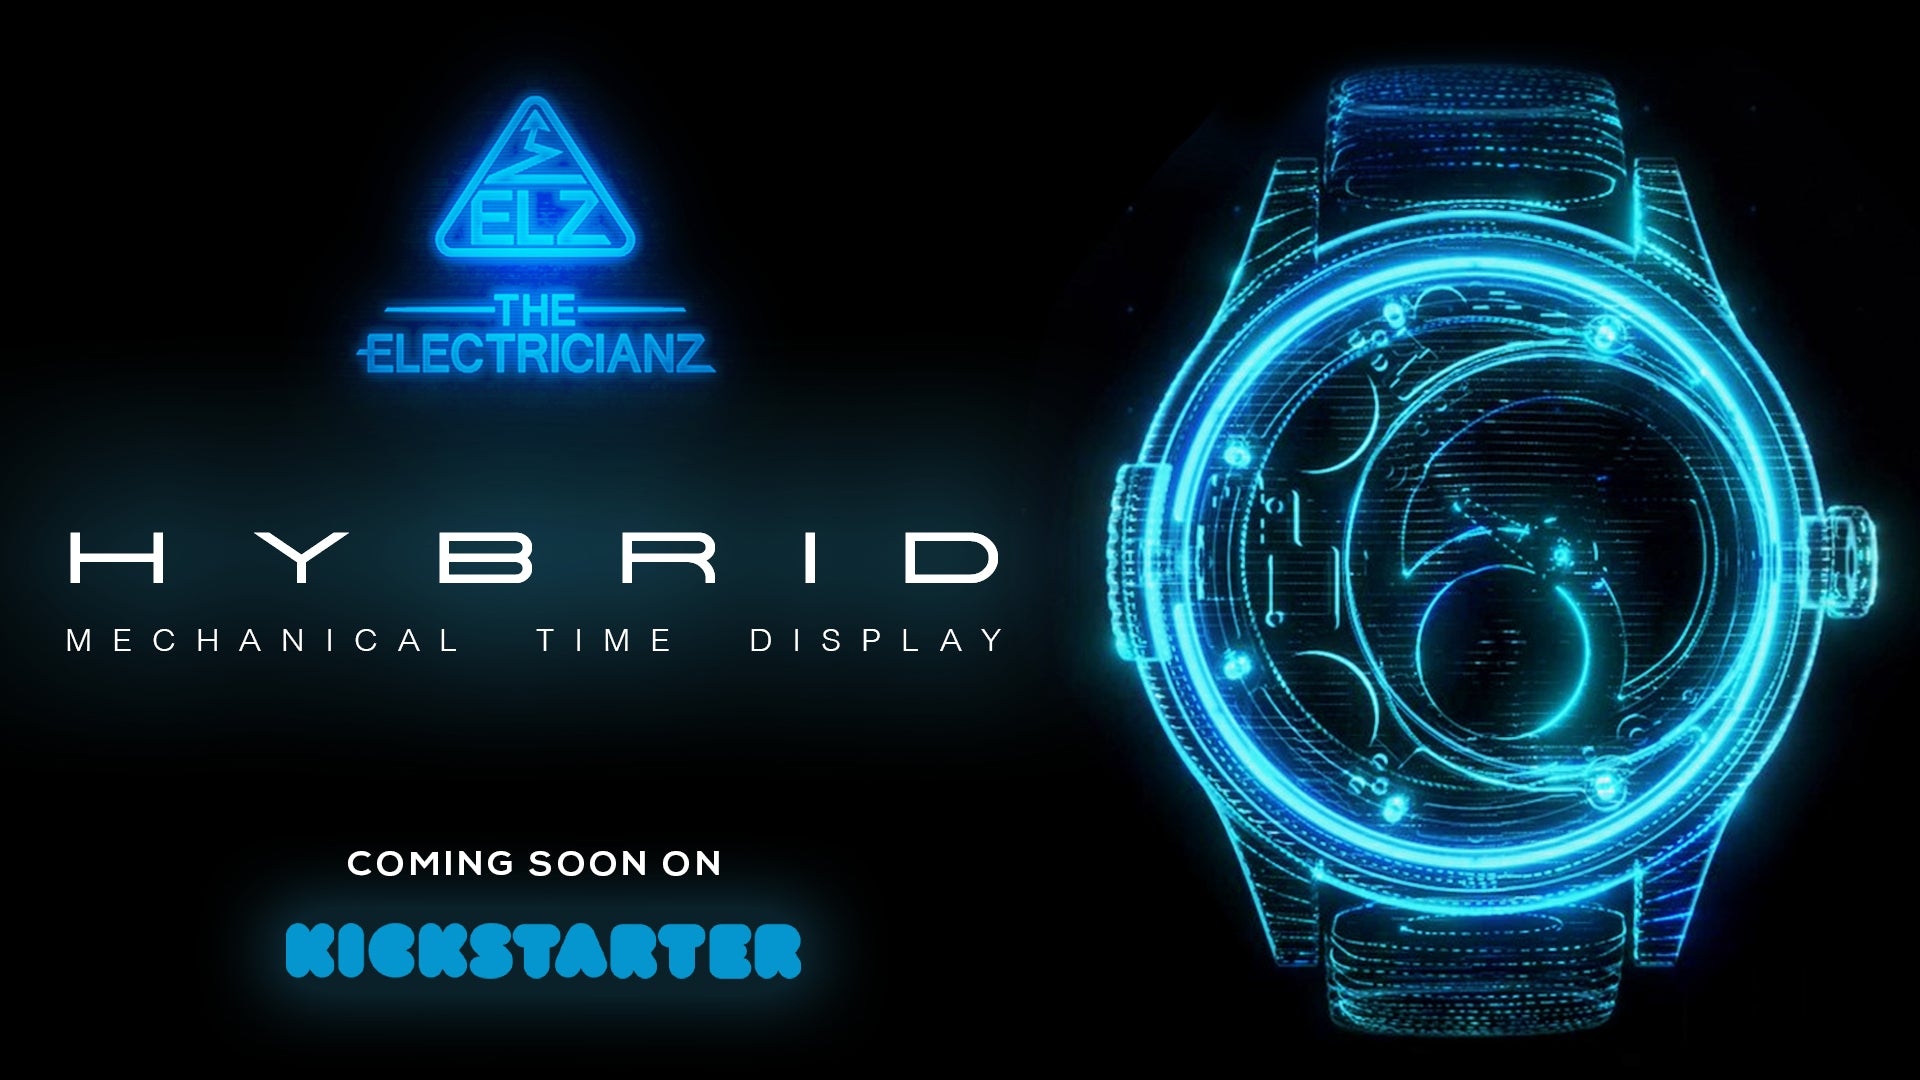 Hybrid mechanical watch concept on Kickstarter